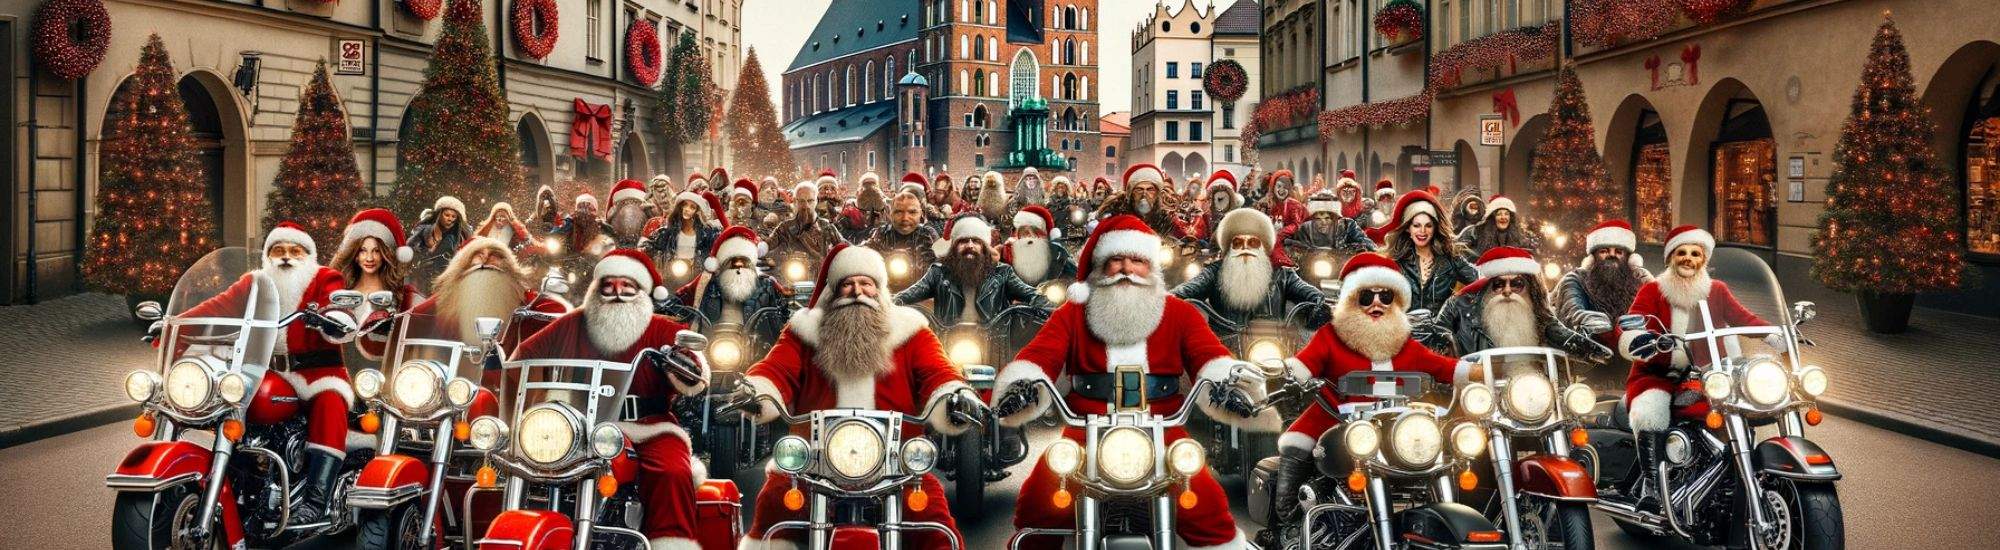 MotoPères Noël à Cracovie : Tradition joyeuse au service d'une noble cause